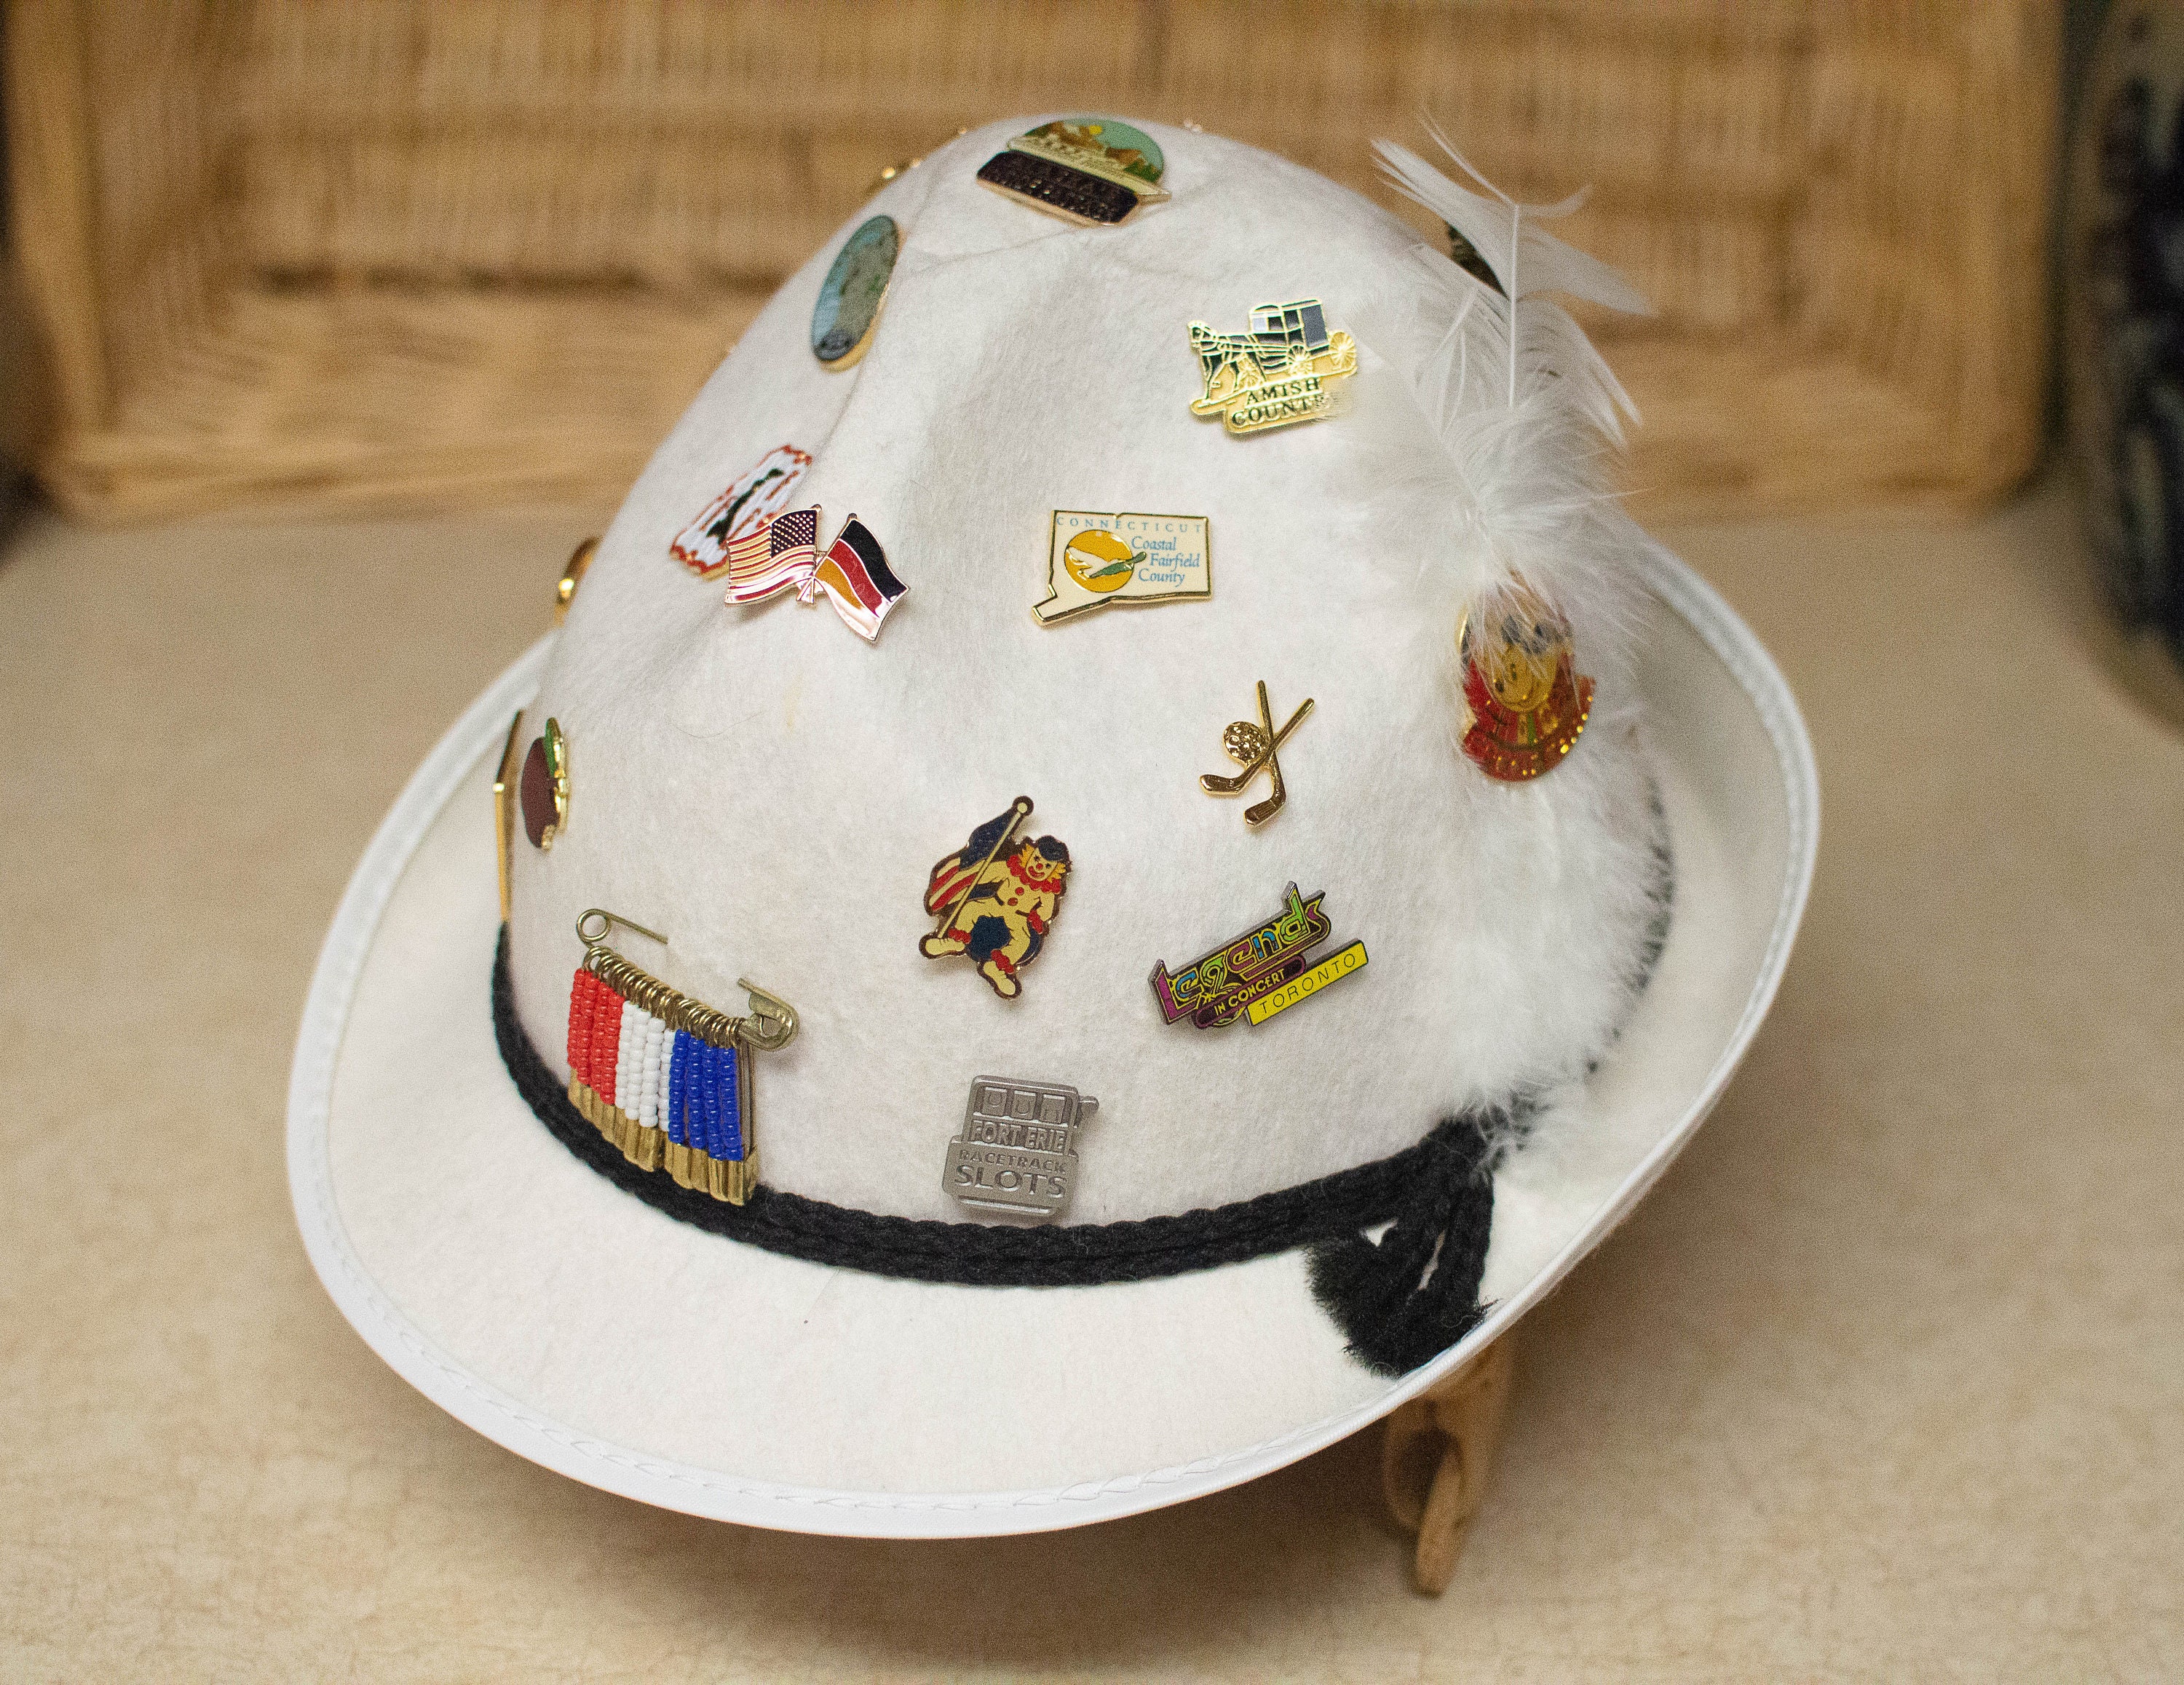 German Hat Pins